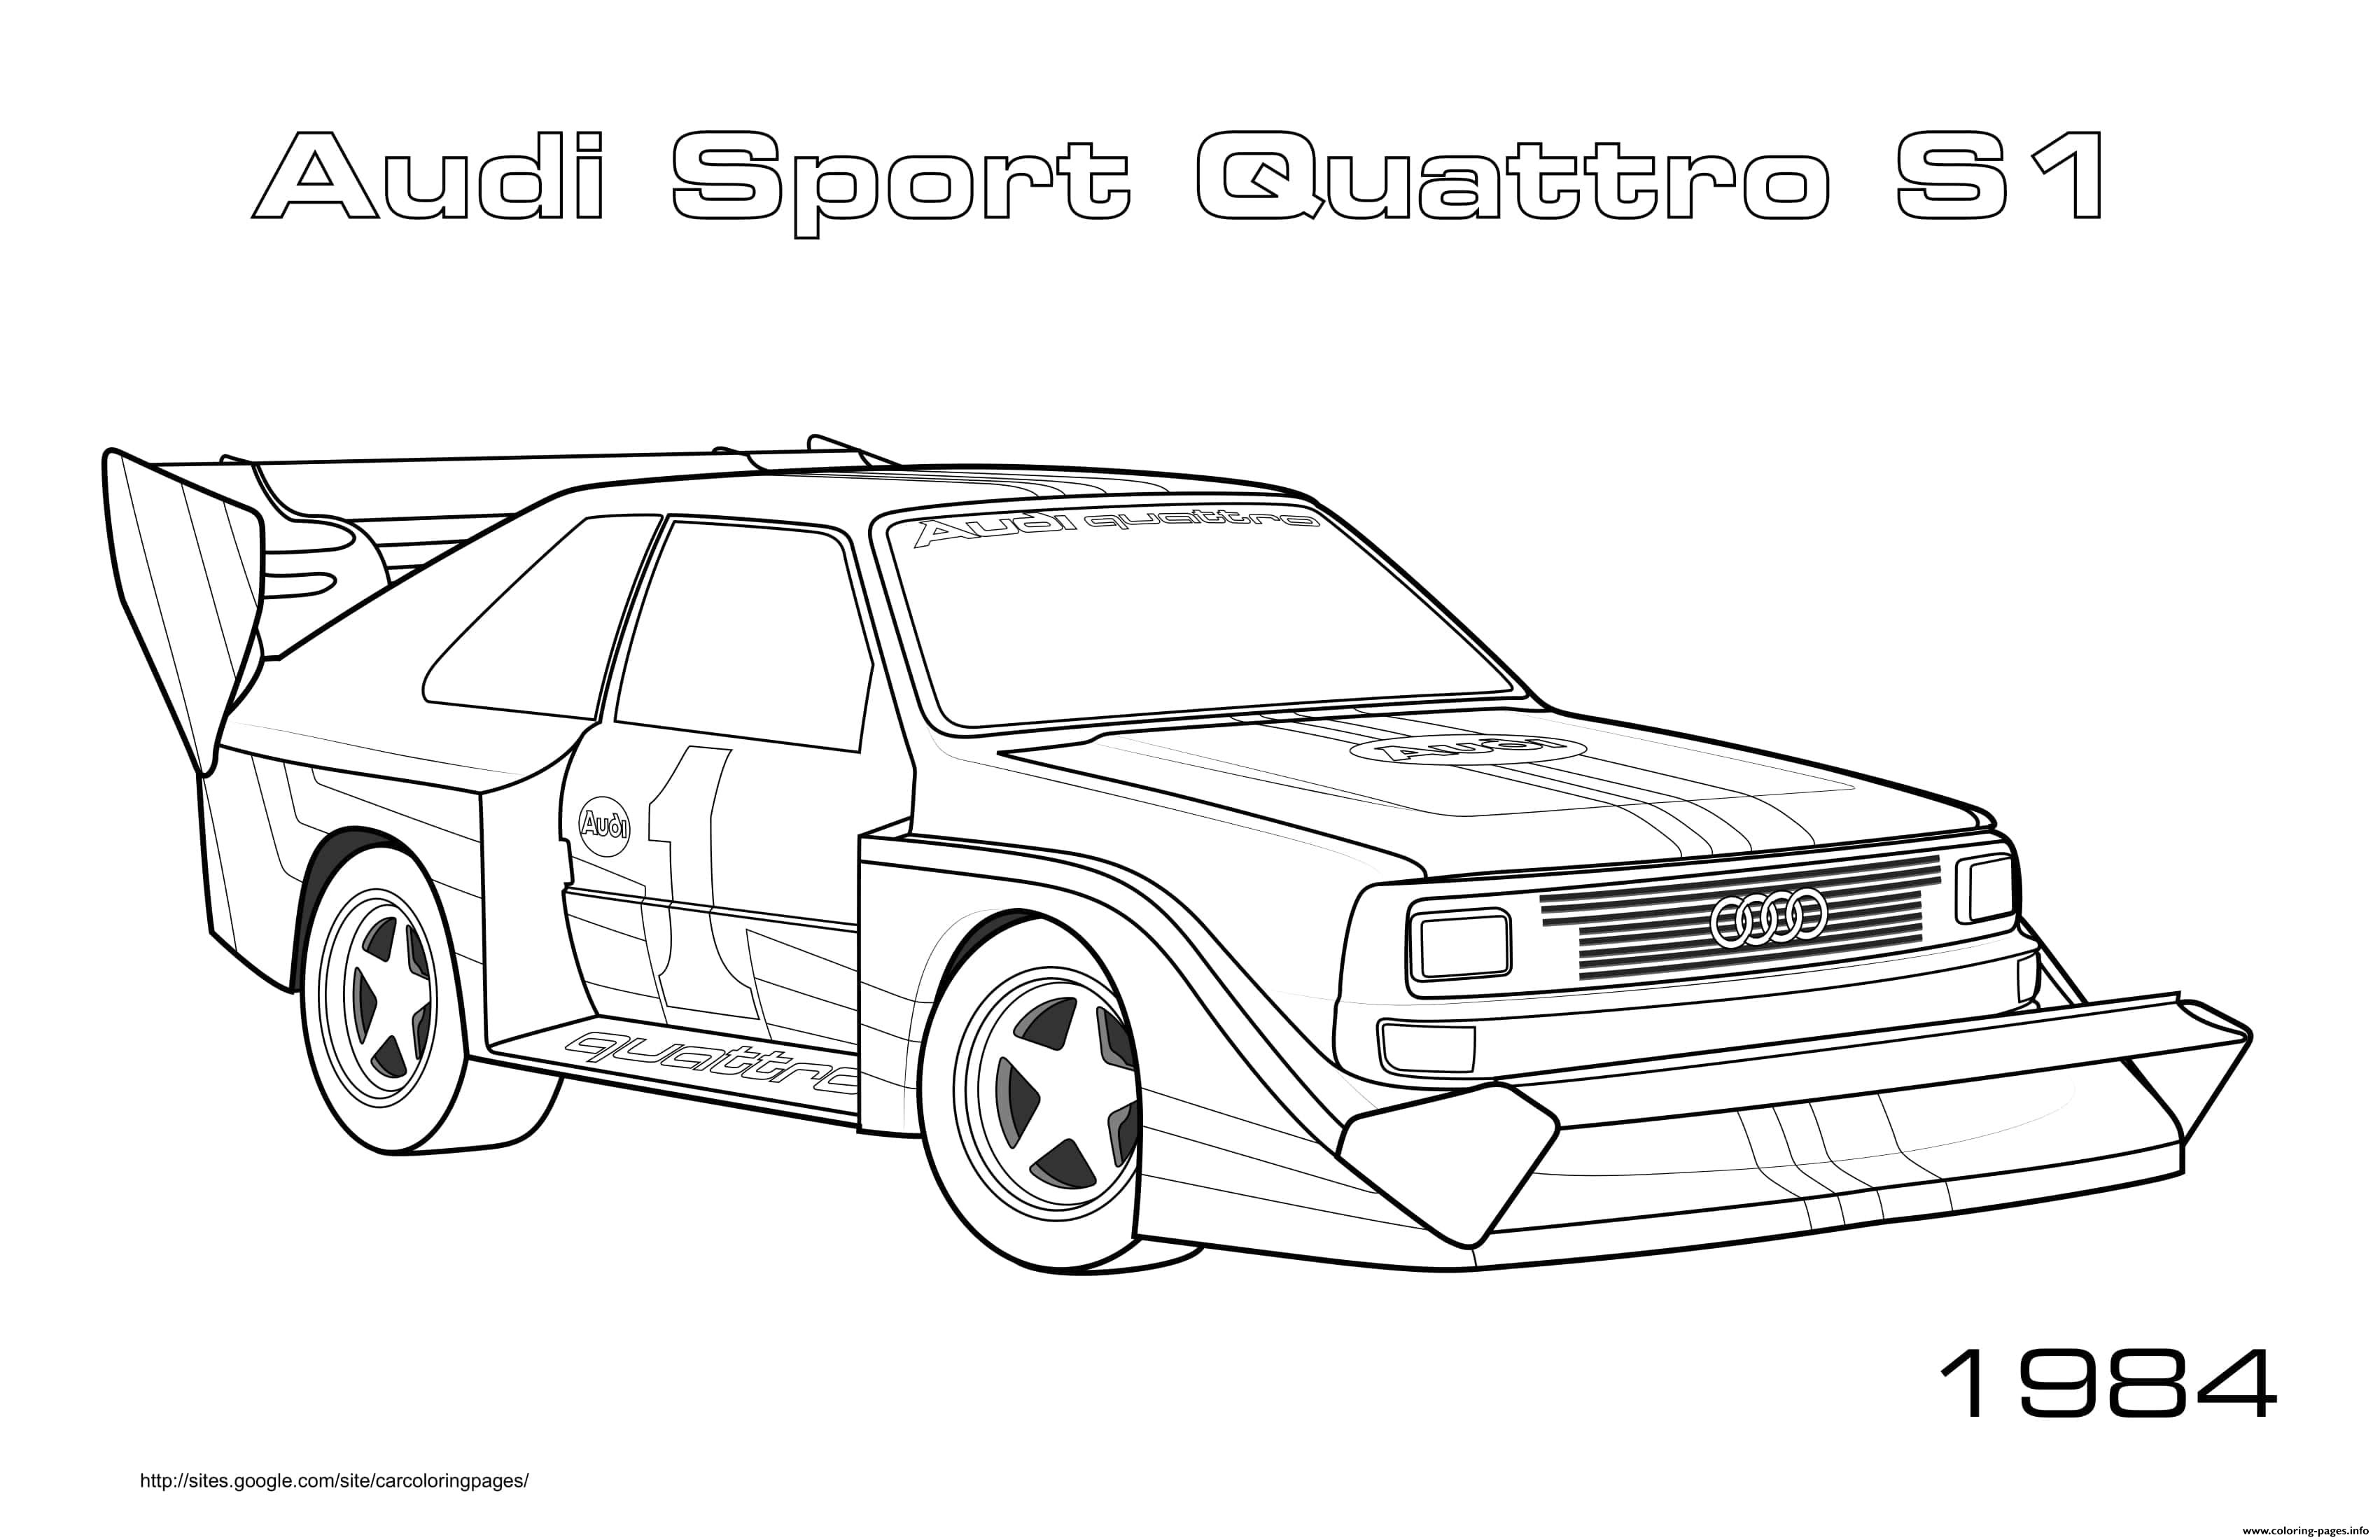 Audi Sport Quattro S1 1984 coloring